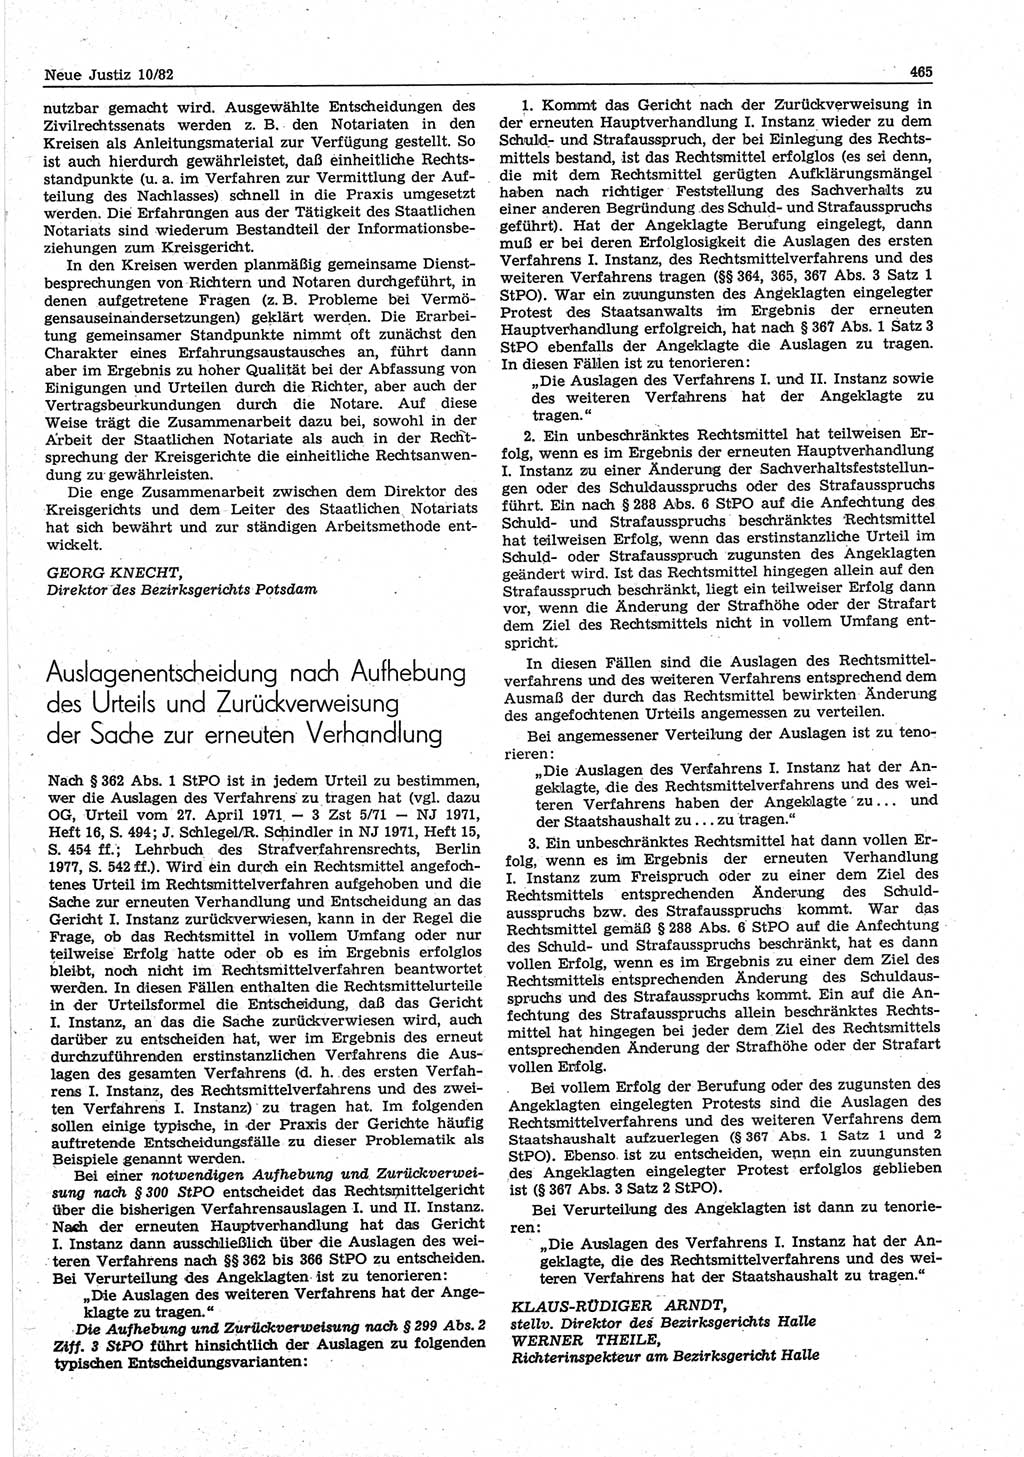 Neue Justiz (NJ), Zeitschrift für sozialistisches Recht und Gesetzlichkeit [Deutsche Demokratische Republik (DDR)], 36. Jahrgang 1982, Seite 465 (NJ DDR 1982, S. 465)